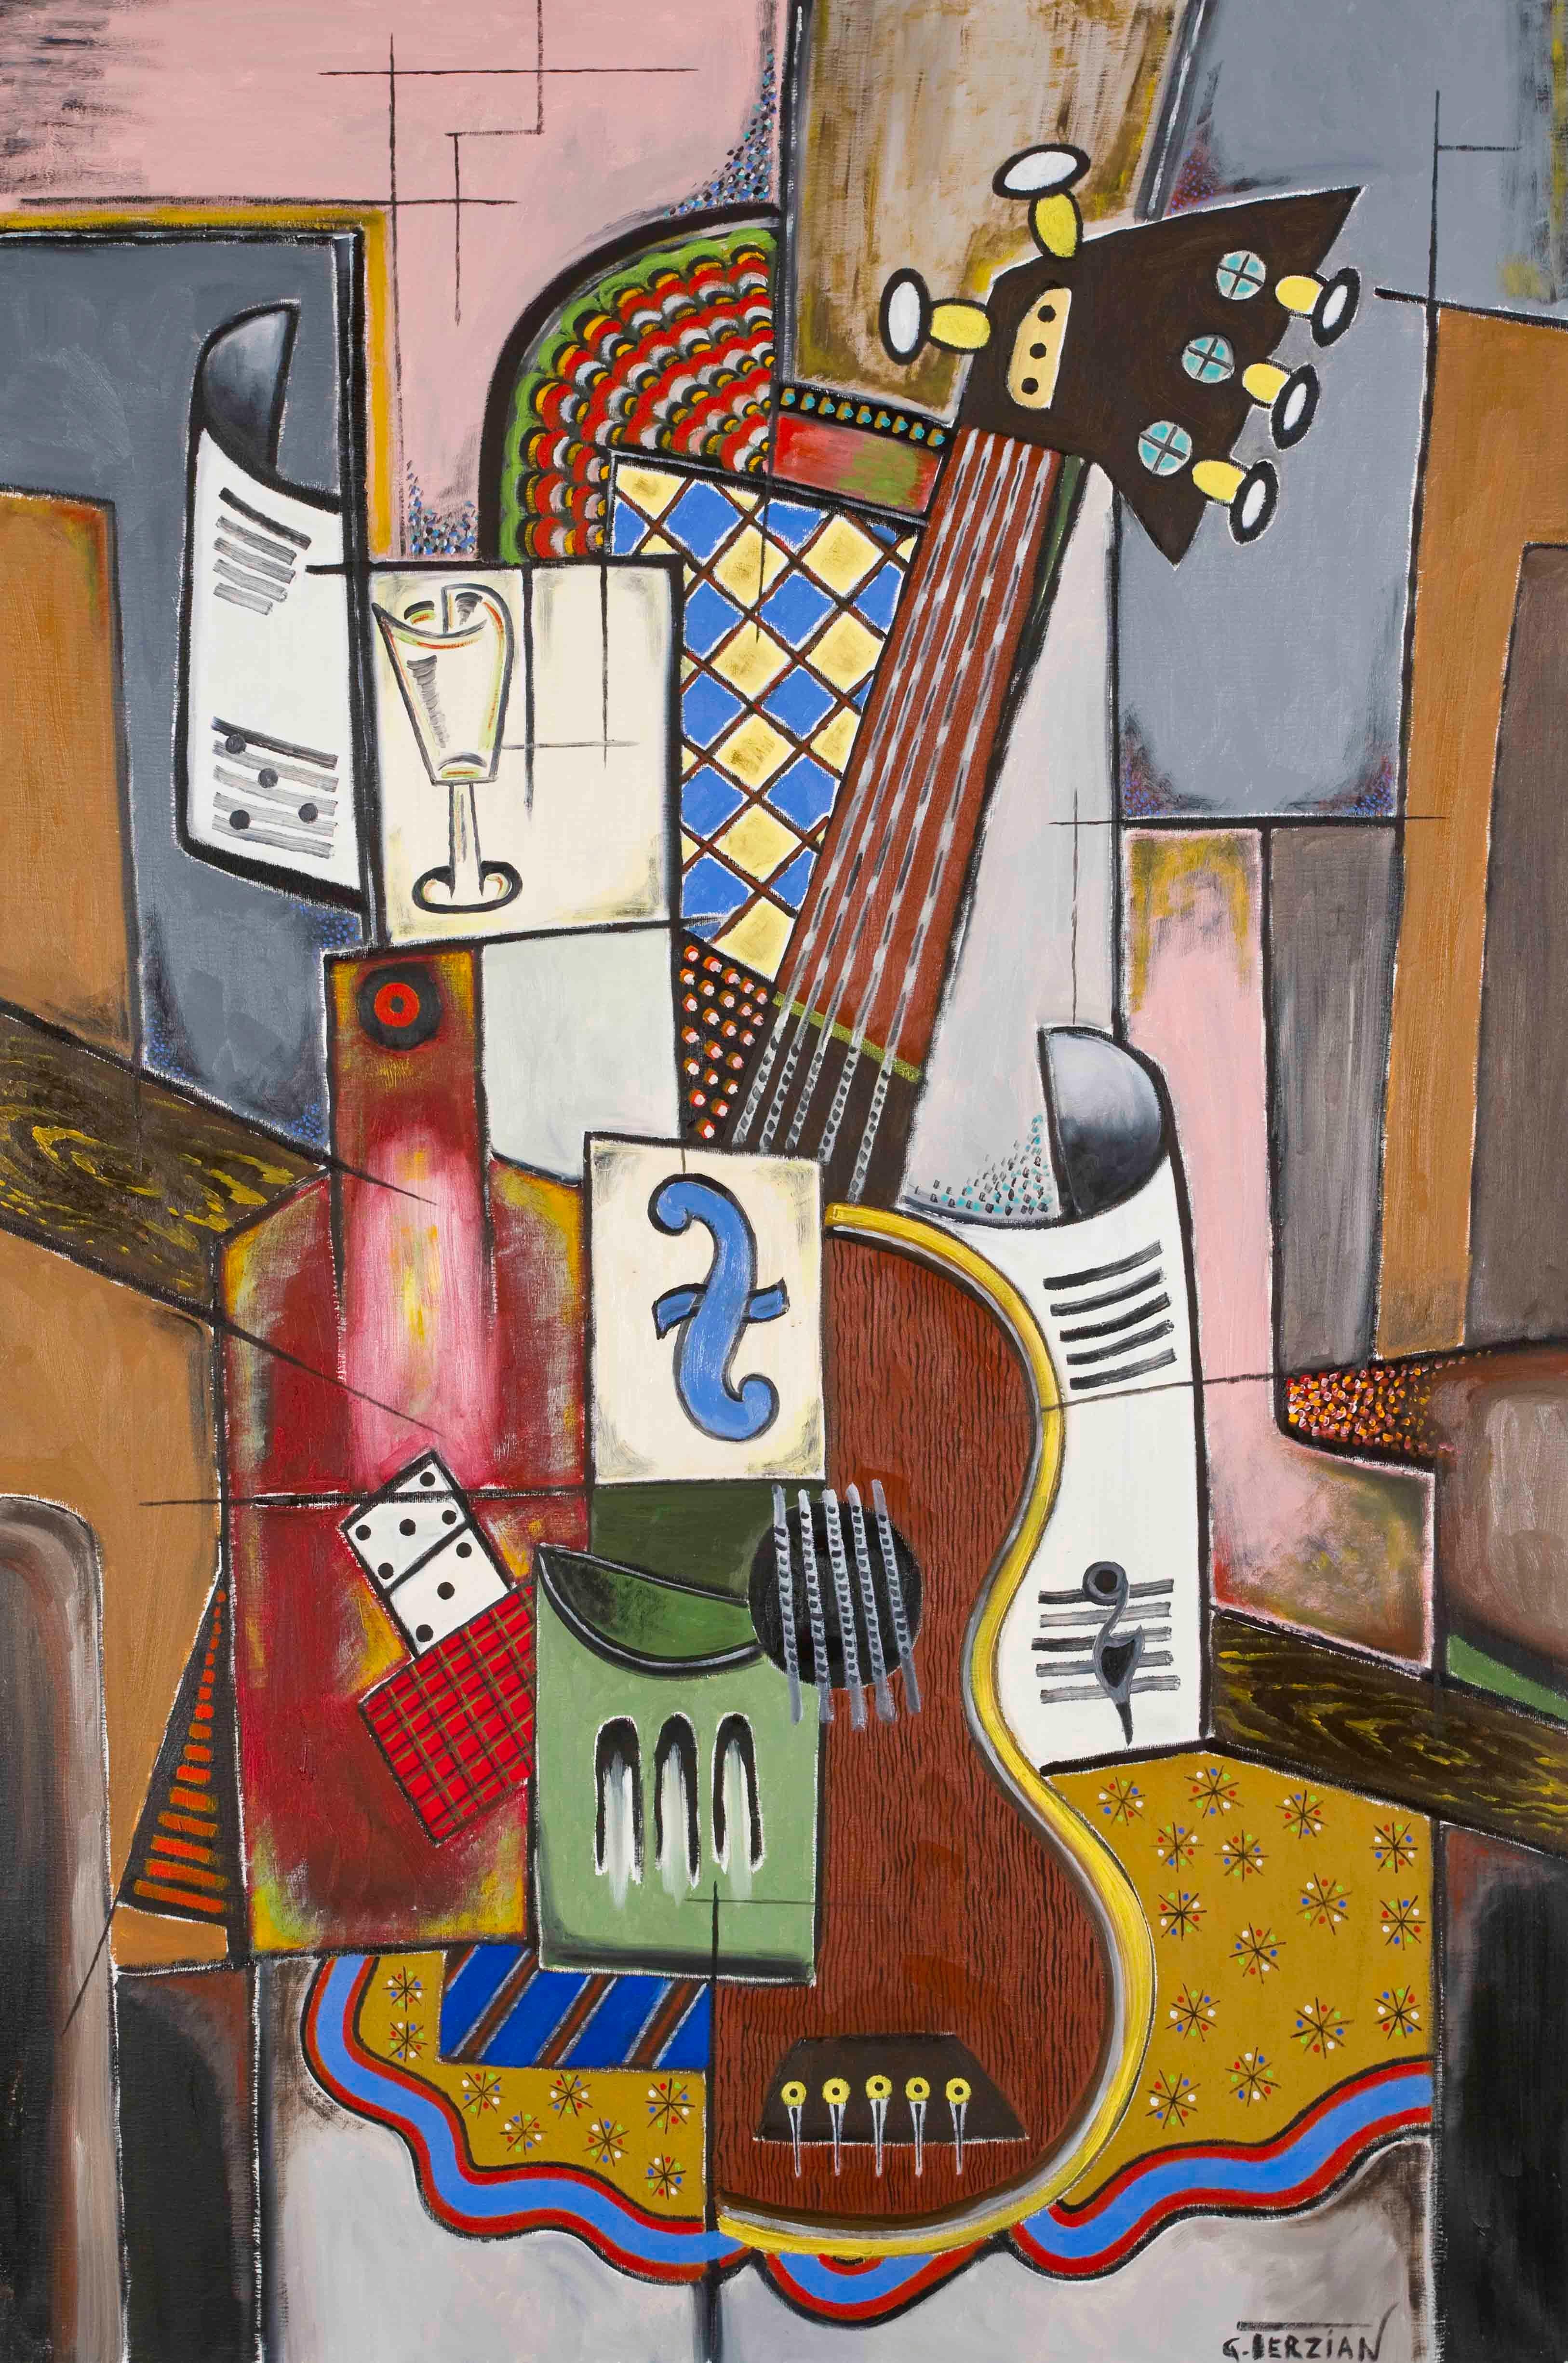 La guitare au domino - Georges Terzian, contemporary, cubist, painting, guitar